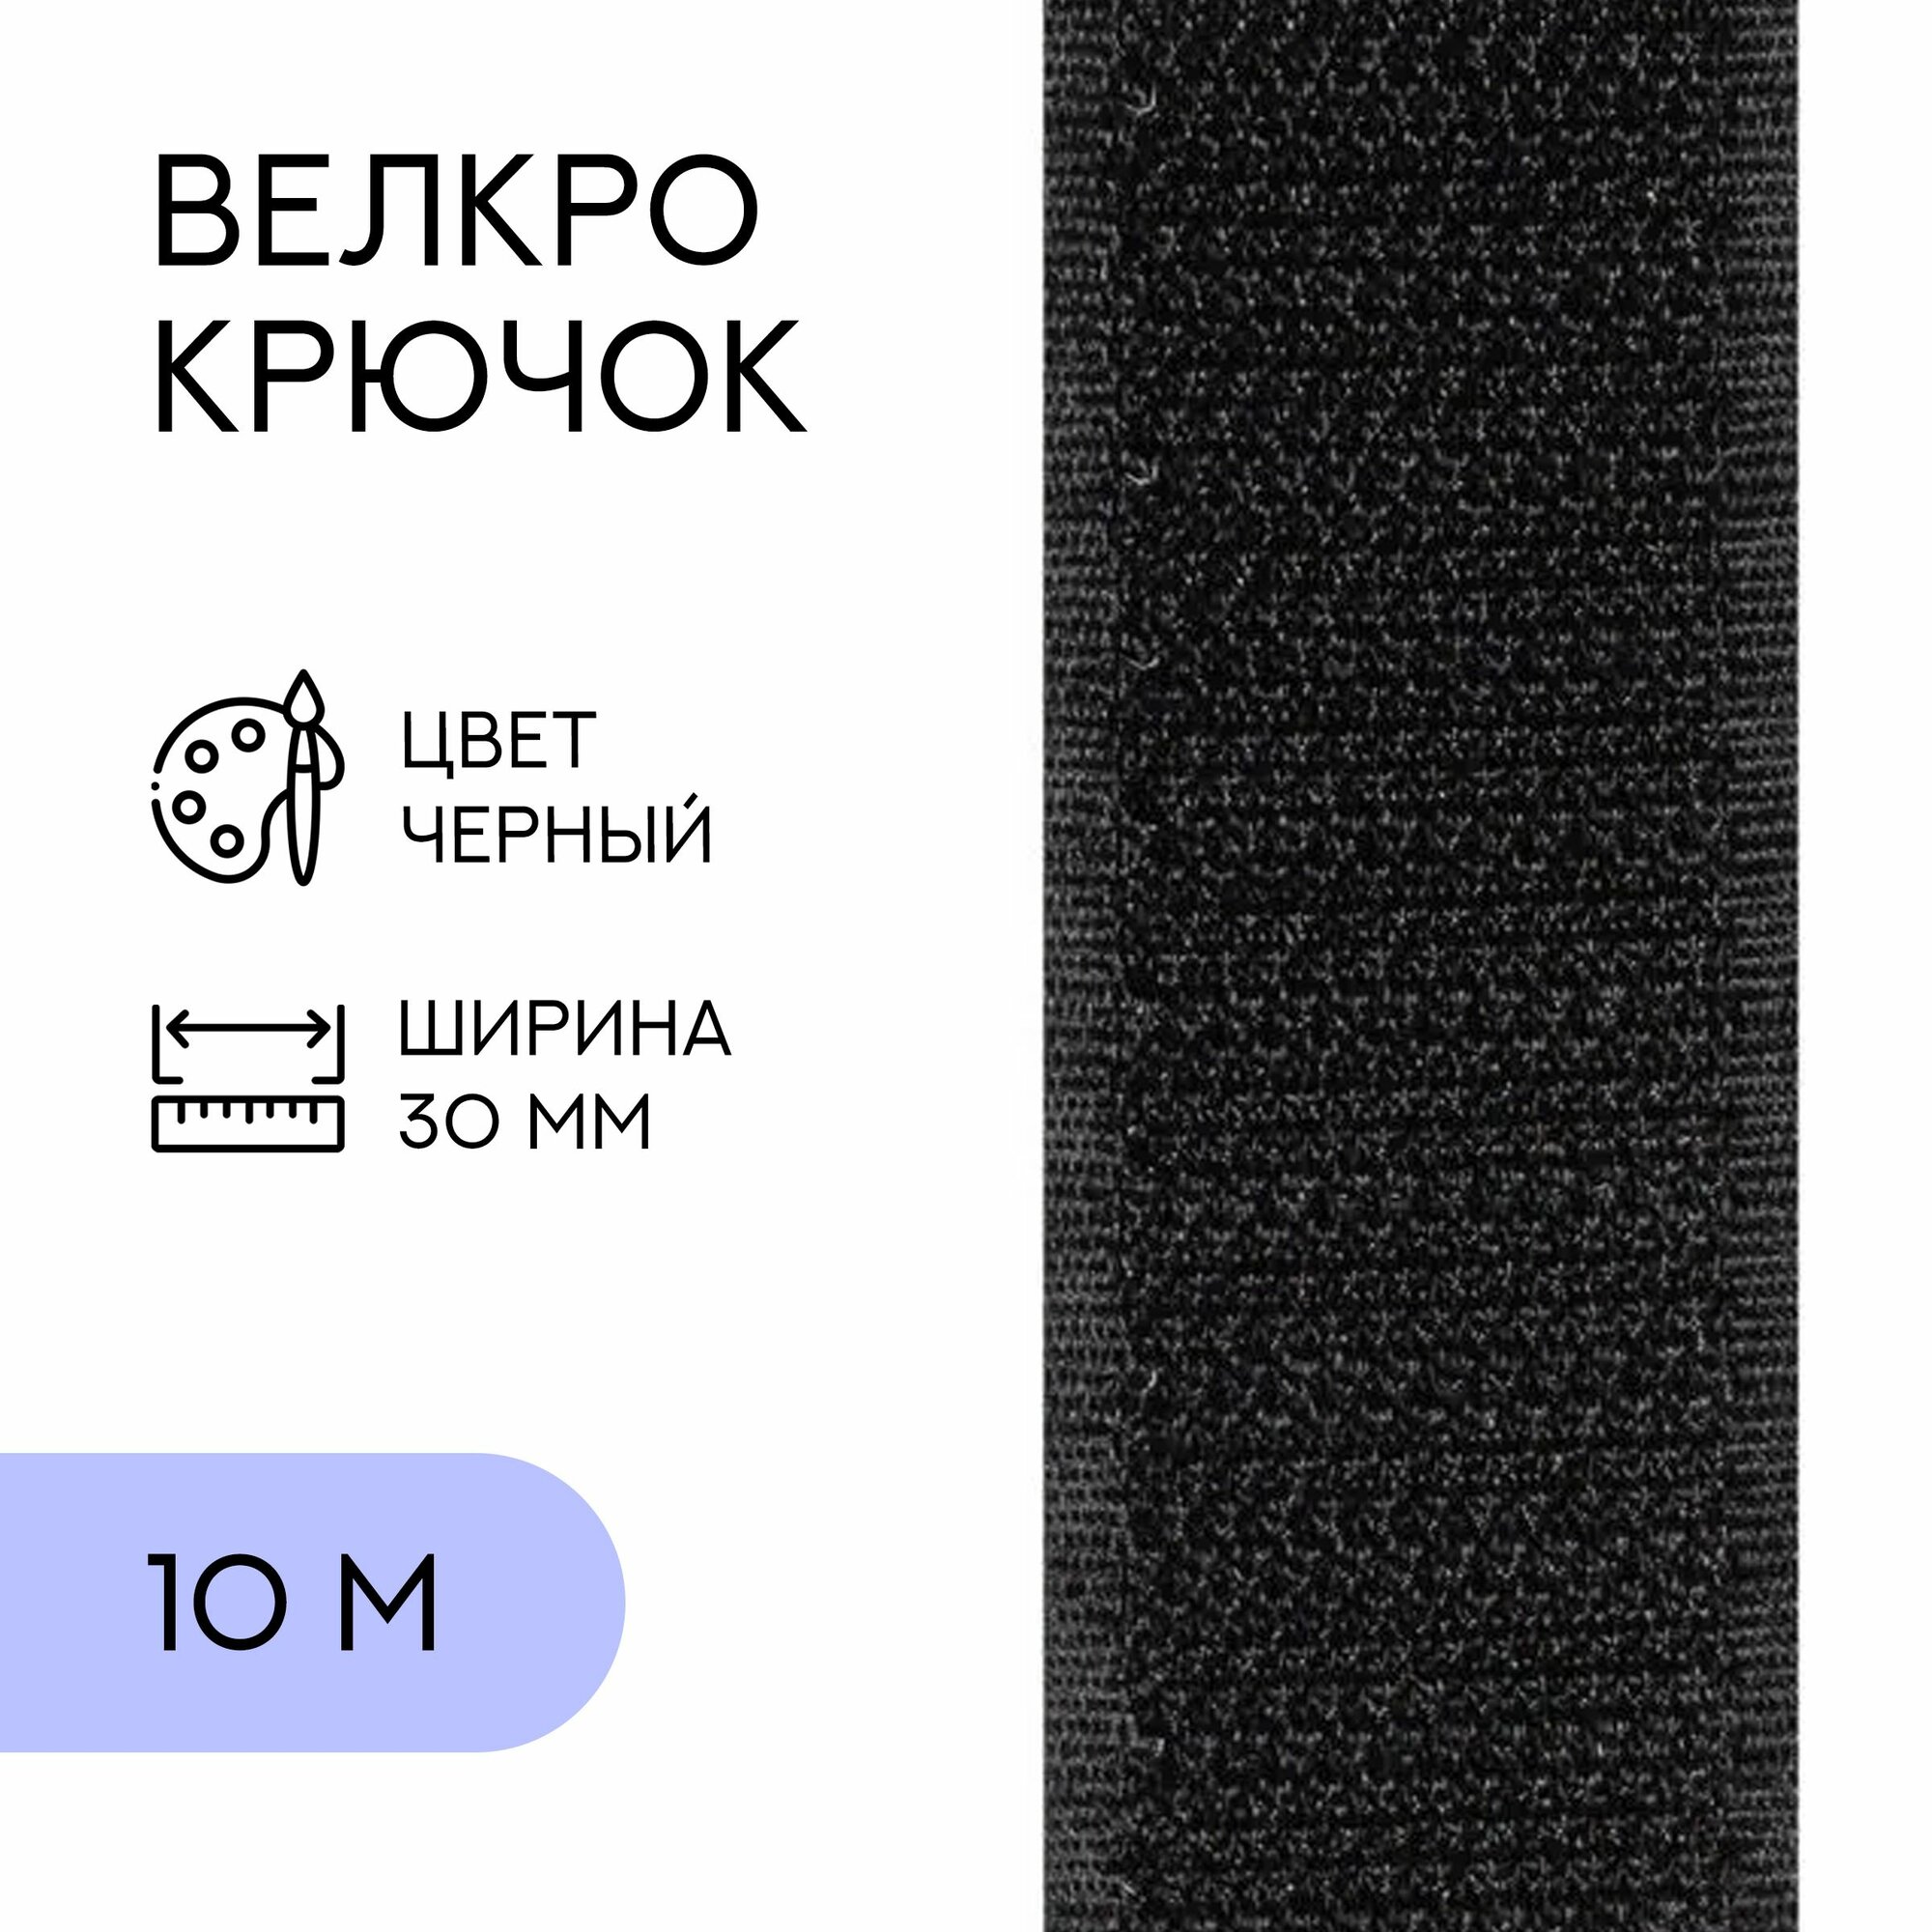 Велкро (крючок)/ лента контактная липучка, 30 мм, черный, 10 м